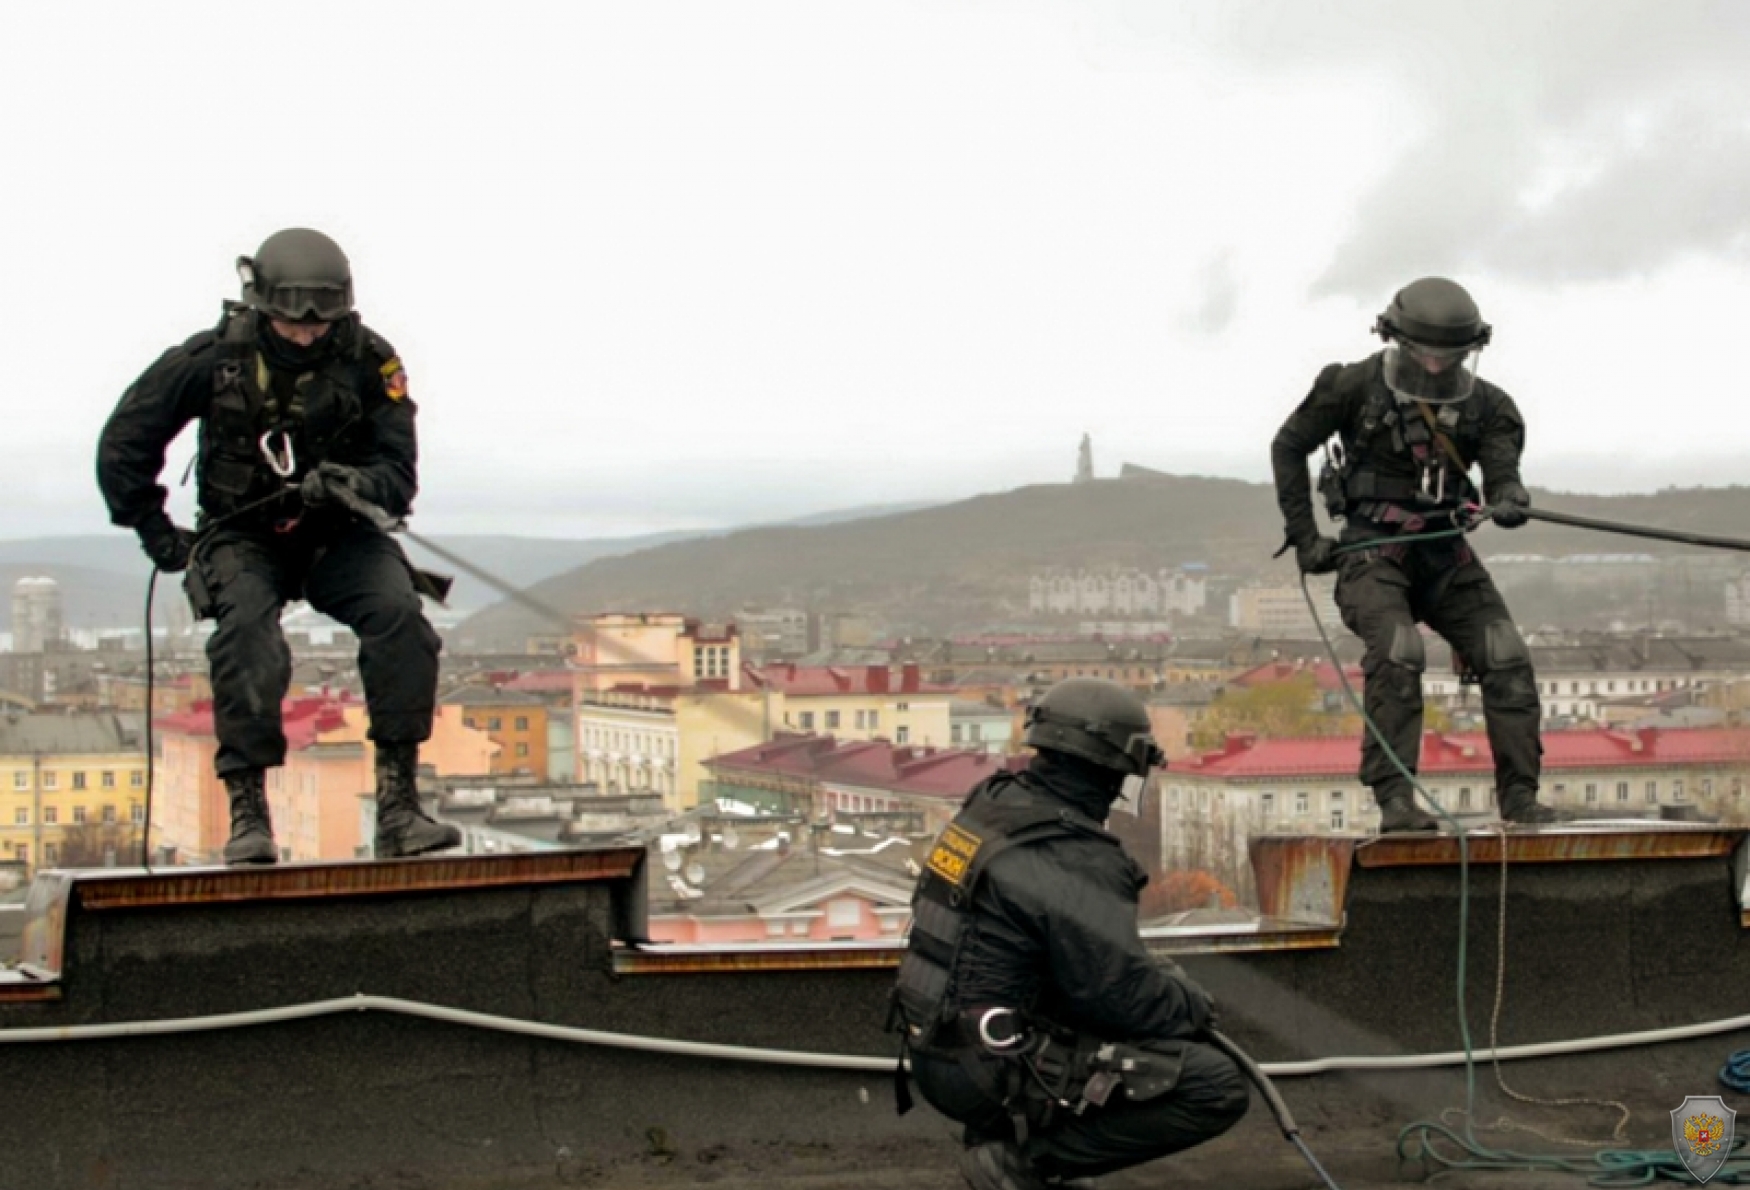 Сотрудники спецподразделения готовятся к штурму с использованием альпинистского снаряжения